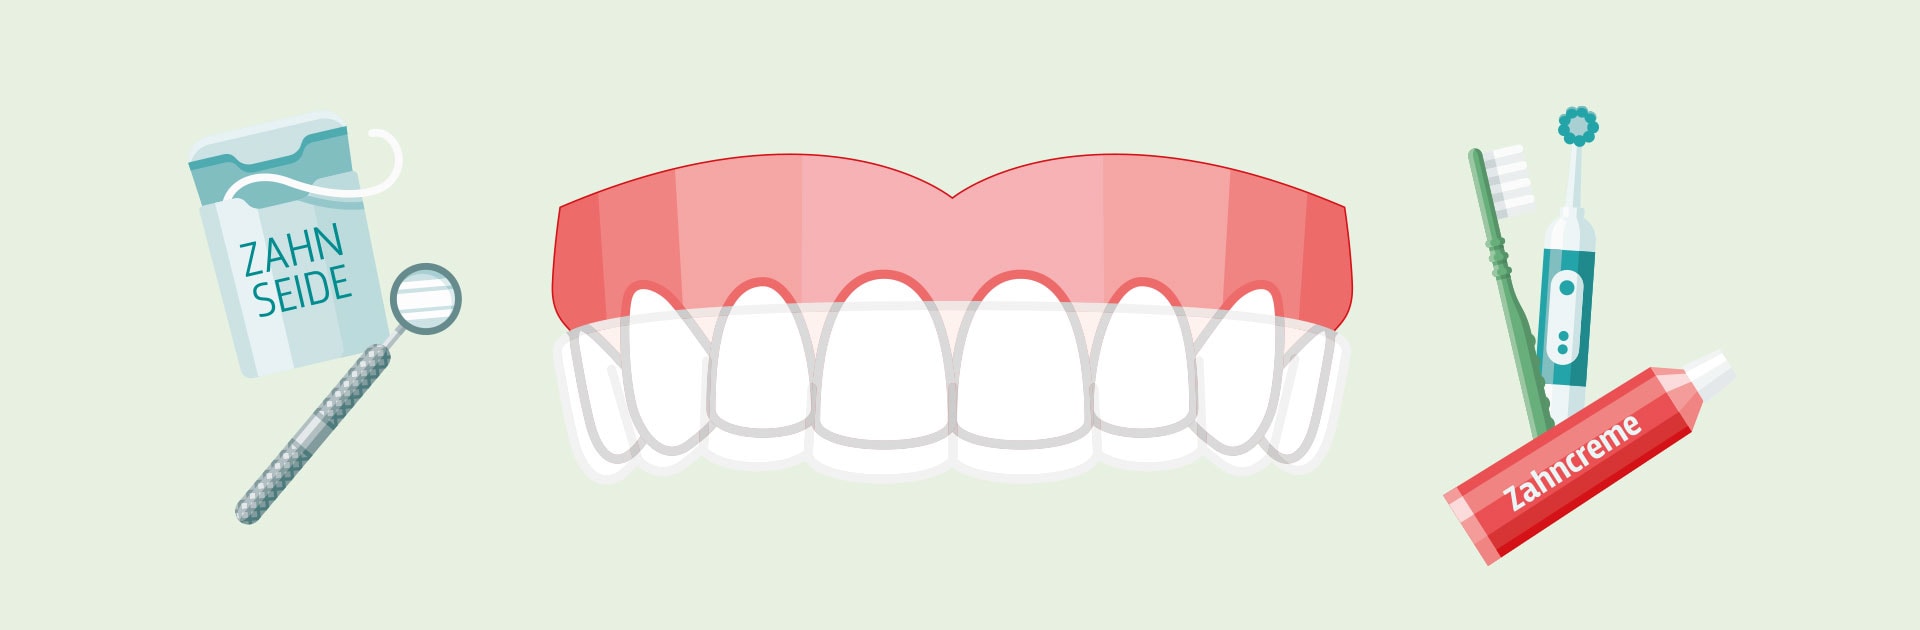 Die Grafik zeigt ein Gebiss im Zentrum sowie Utensilien zur Zahnhygiene auf der rechten und linken Seite neben dem Gebiss. Zu sehen sind eine Zahnpastatube, Zahnbürsten und Zahnseide.